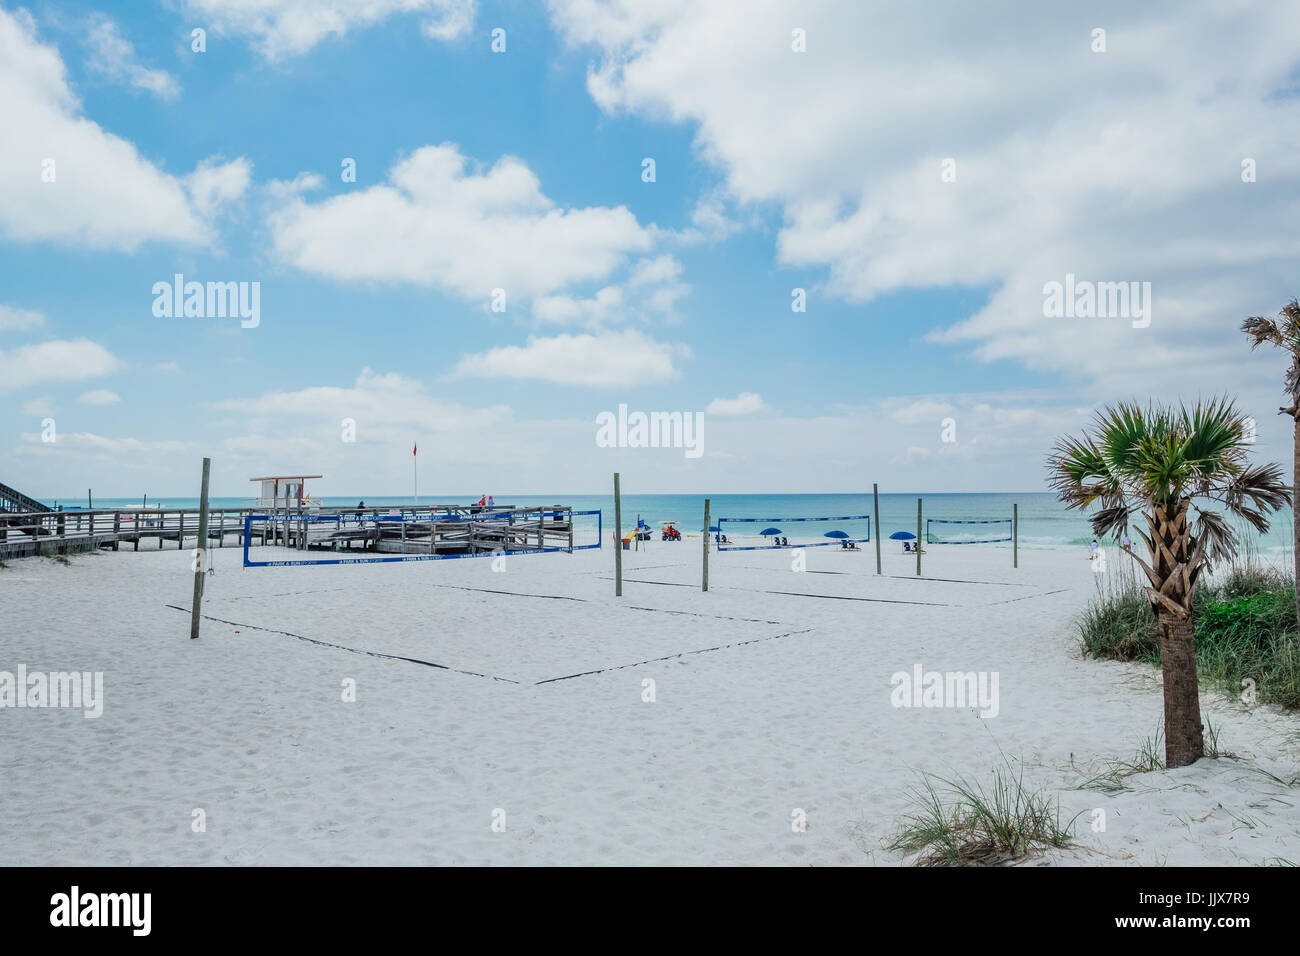 Svuota campi da pallavolo sulla spiaggia in una spiaggia recreation site su Okala Isola, Fort Walton Beach sulla costa del Golfo della Florida, Stati Uniti d'America. Foto Stock